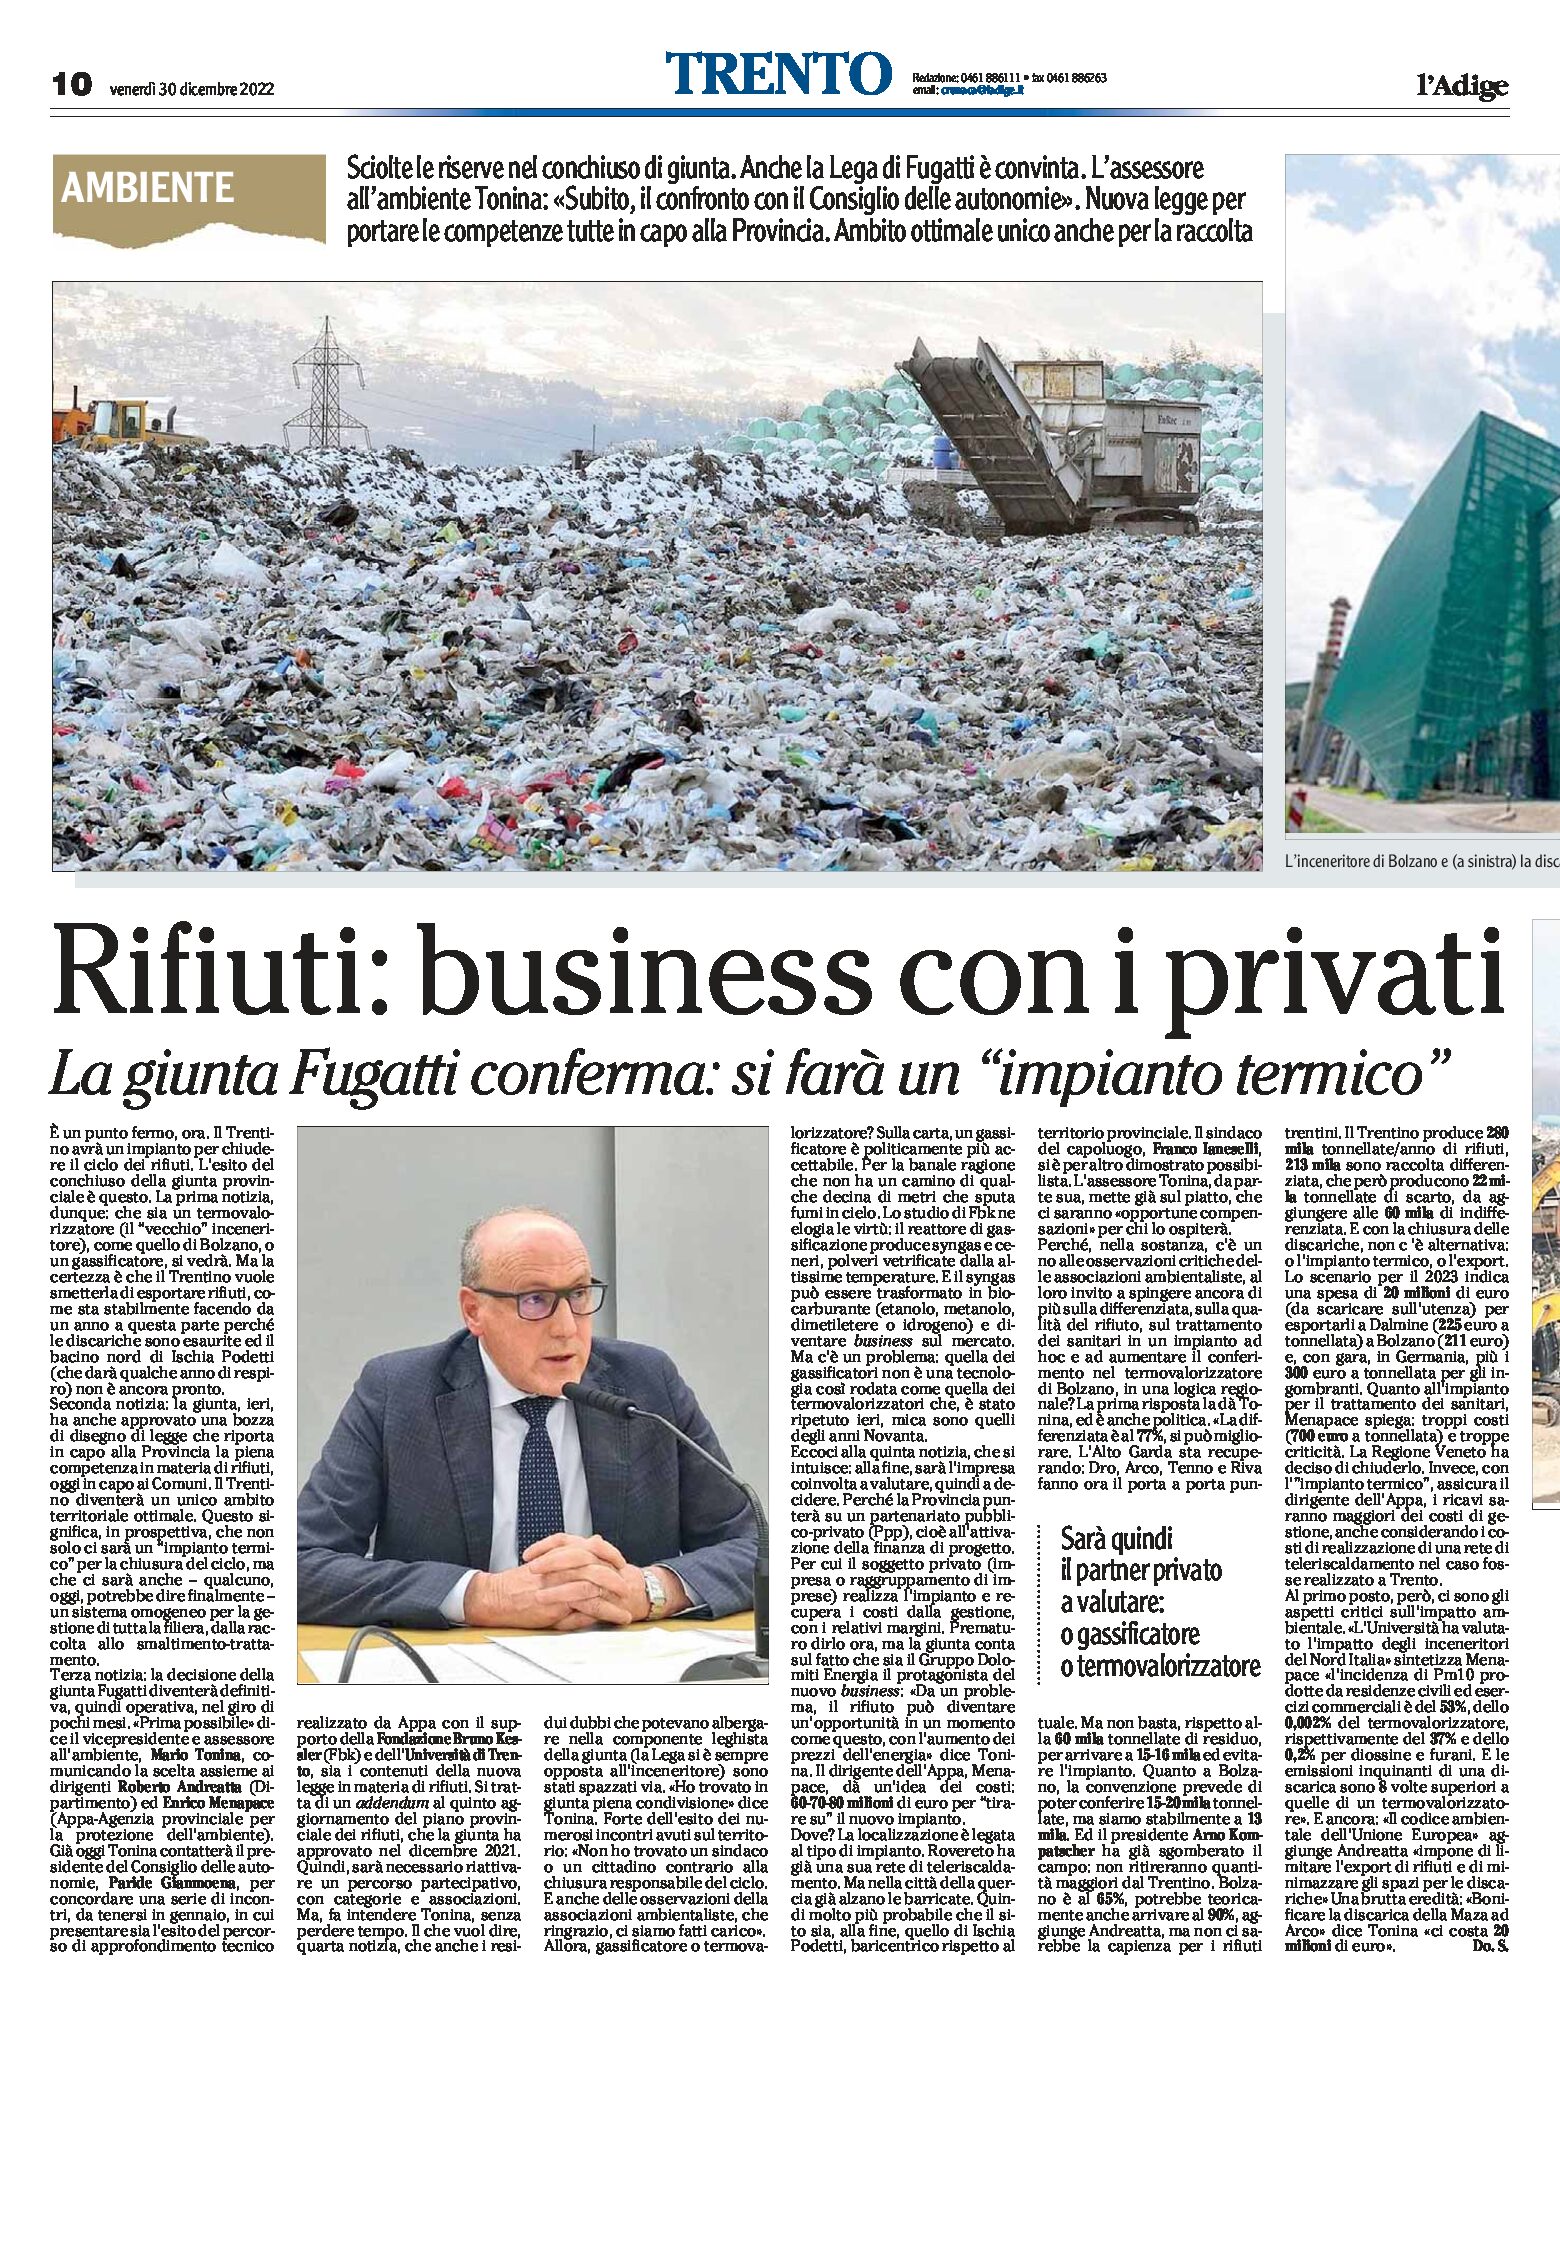 Trentino, rifiuti: la giunta Fugatti conferma “si farà un impianto termico”